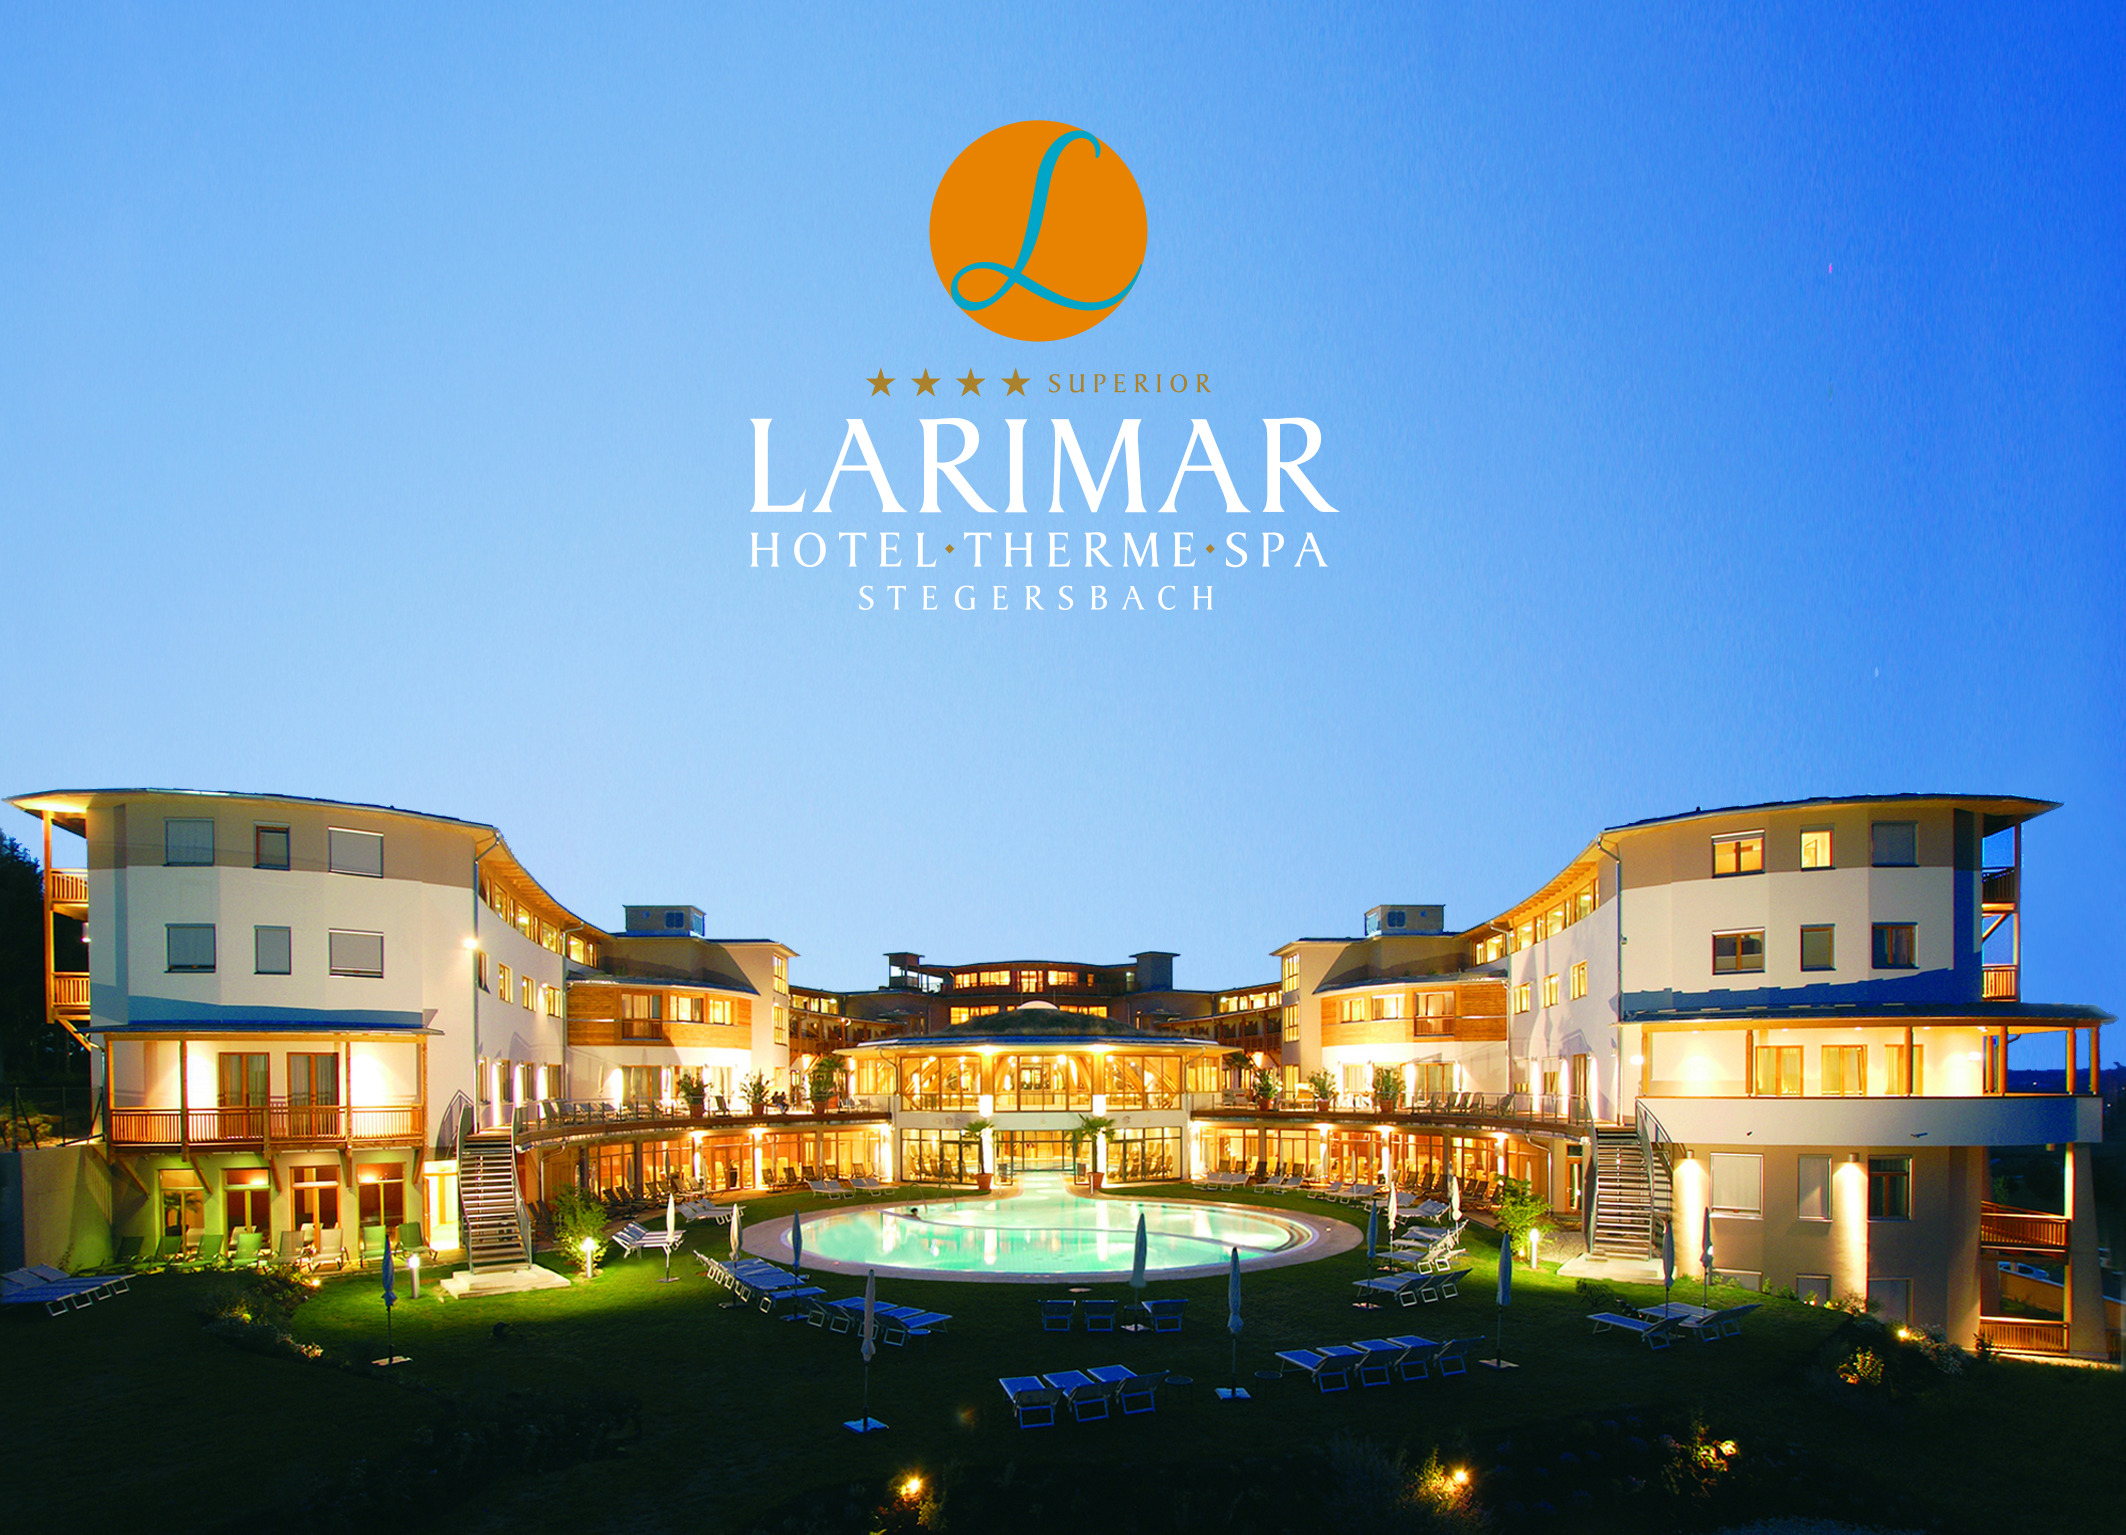 Larimar Hotel